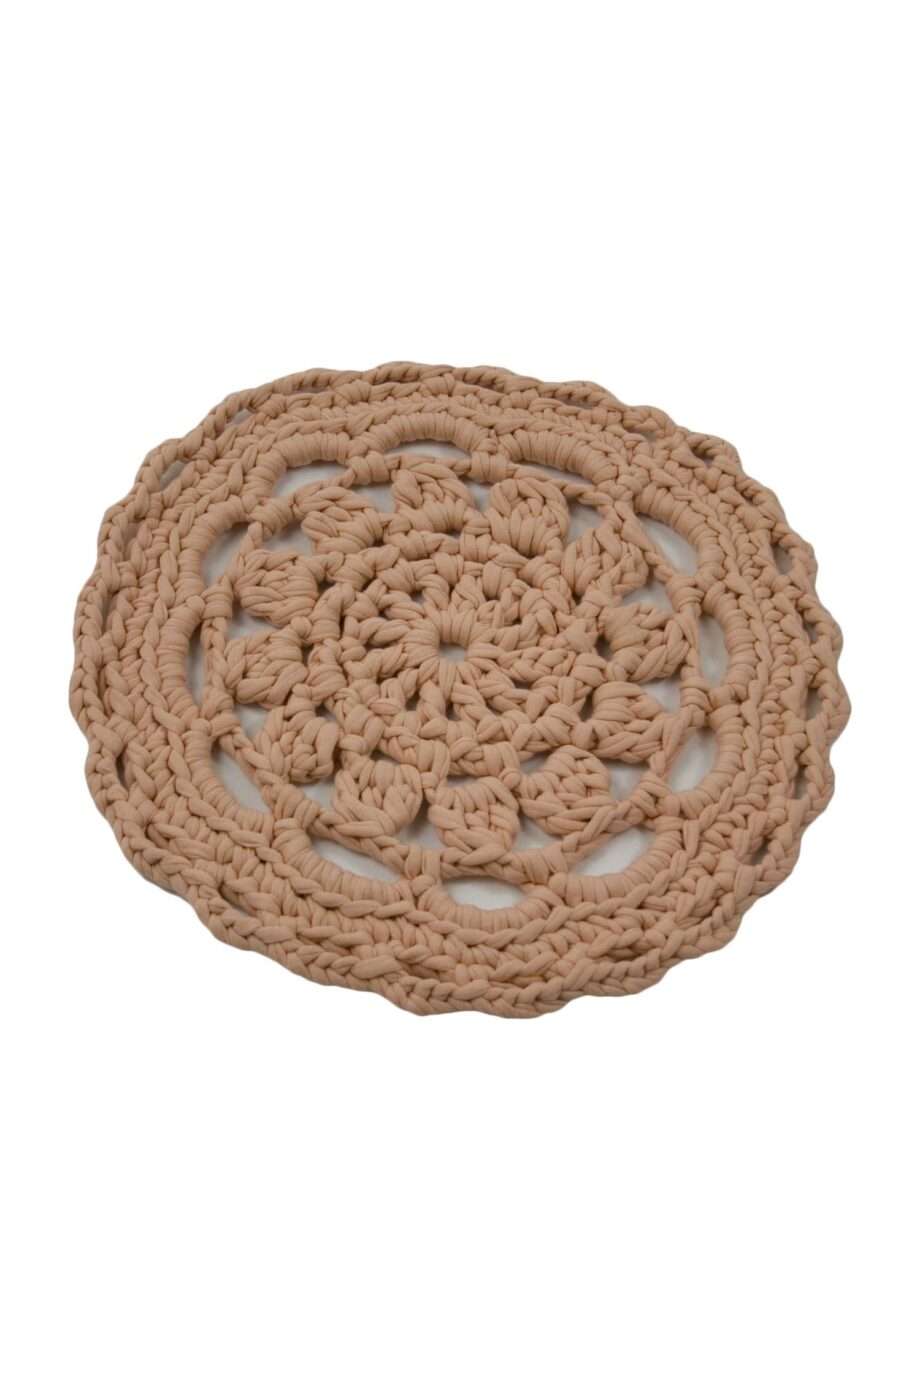 rosette  crochet cotton placemat small